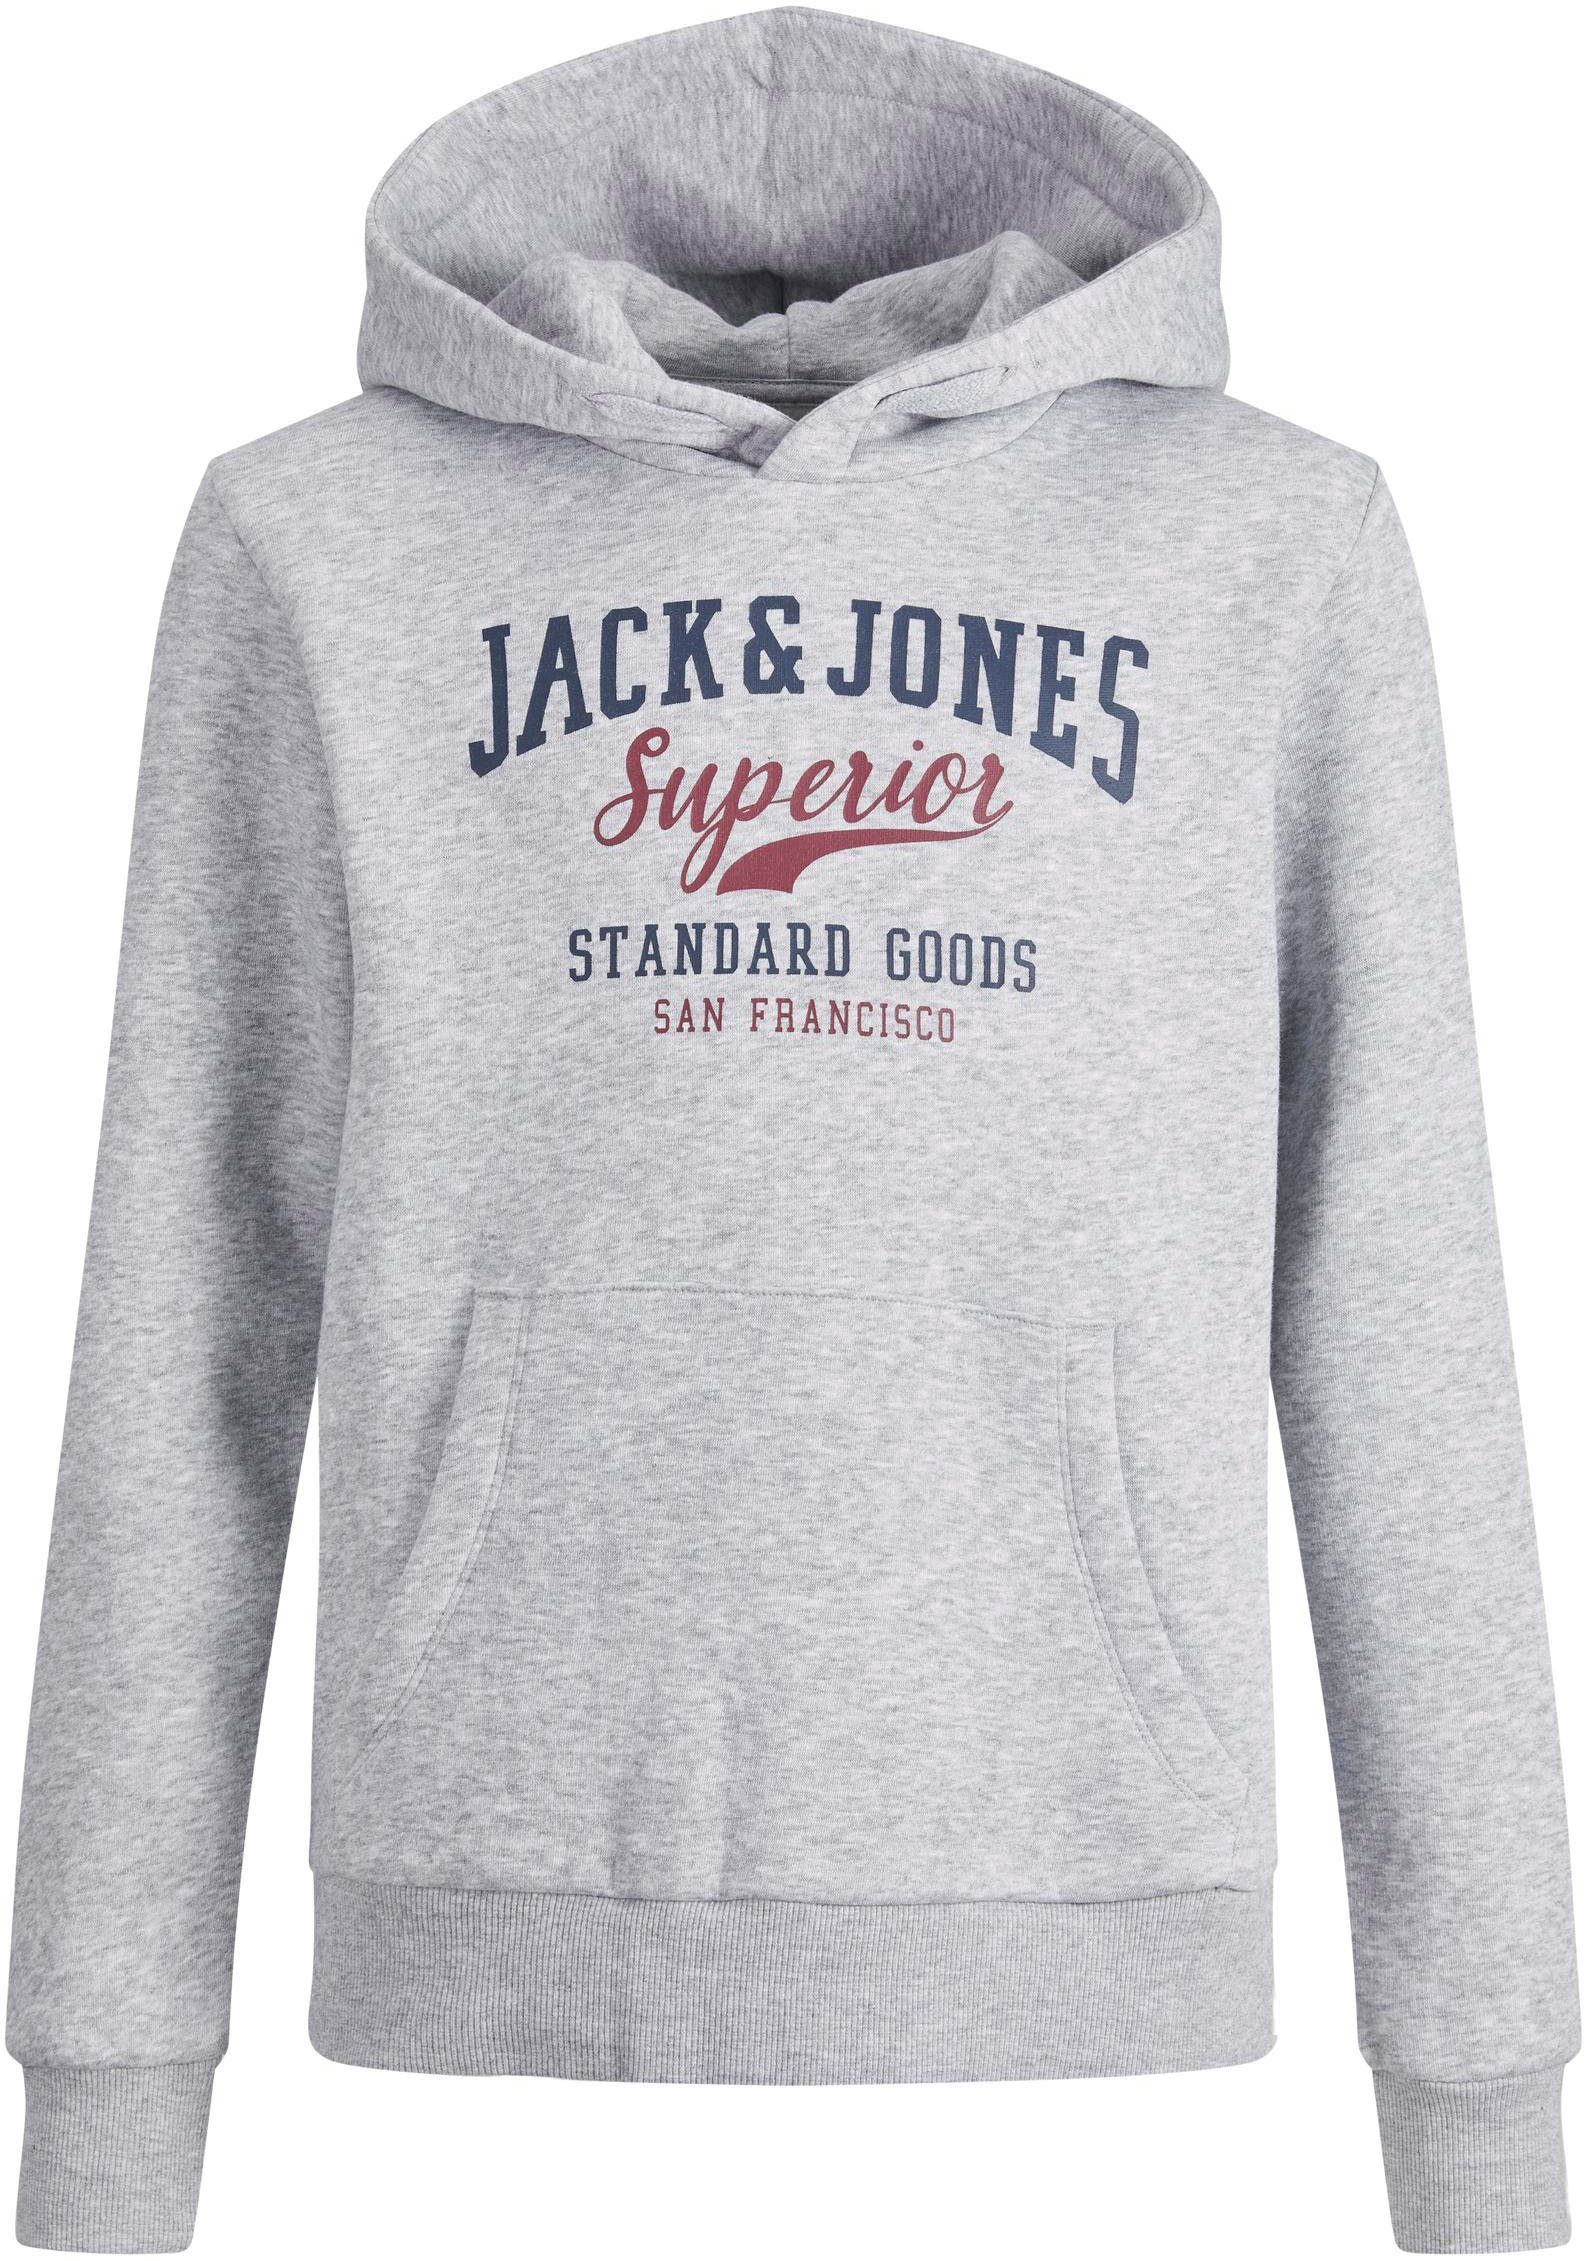 Jack & Jones Junior grey melange Kapuzensweatshirt light